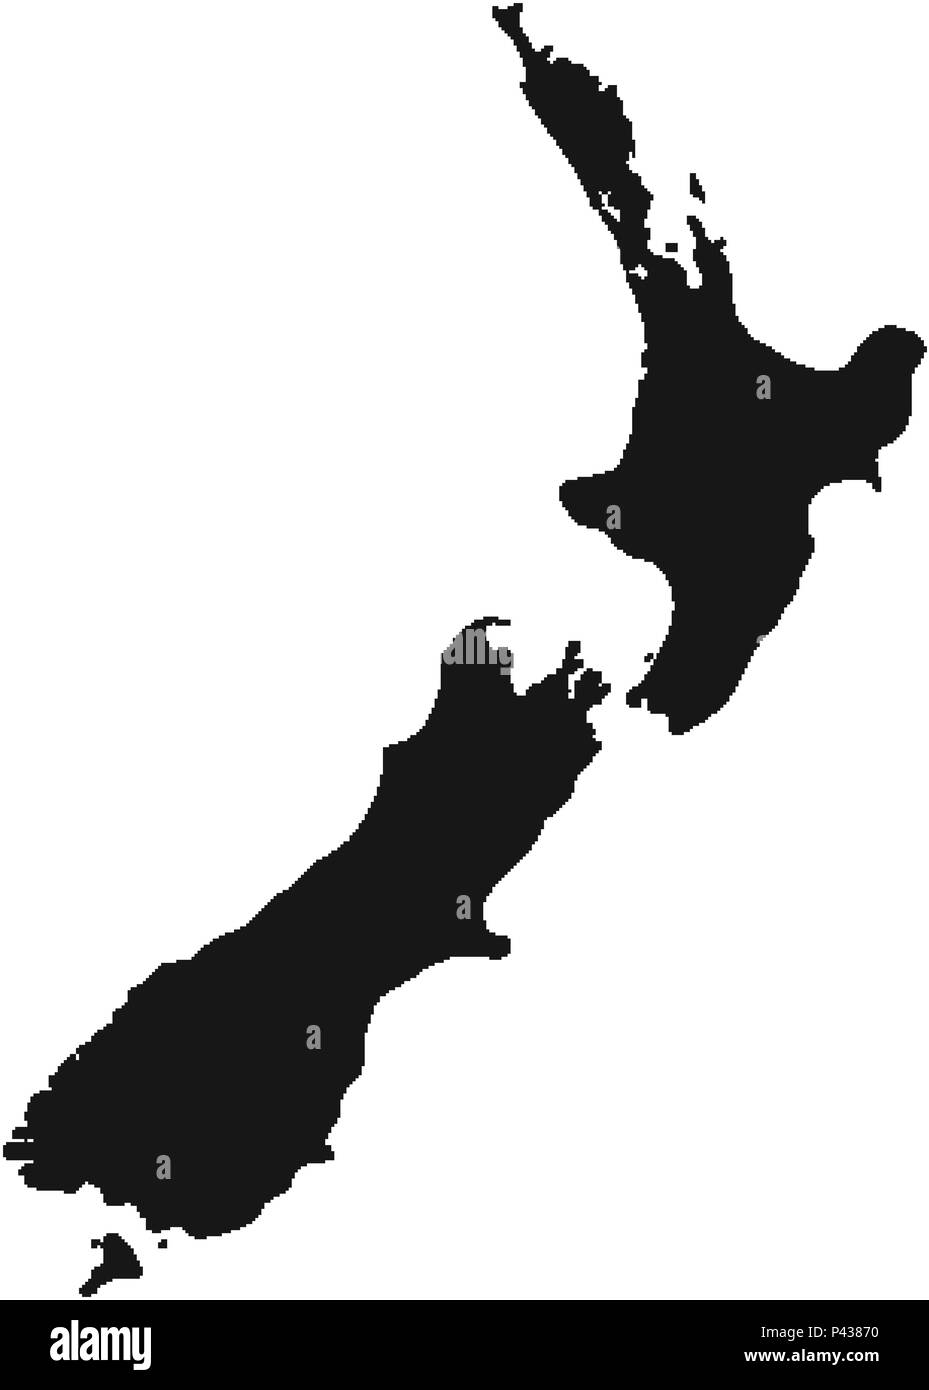 Neuseeland schwarz isoliert Karte backkground. Aotearoa Kart Stock Vektor